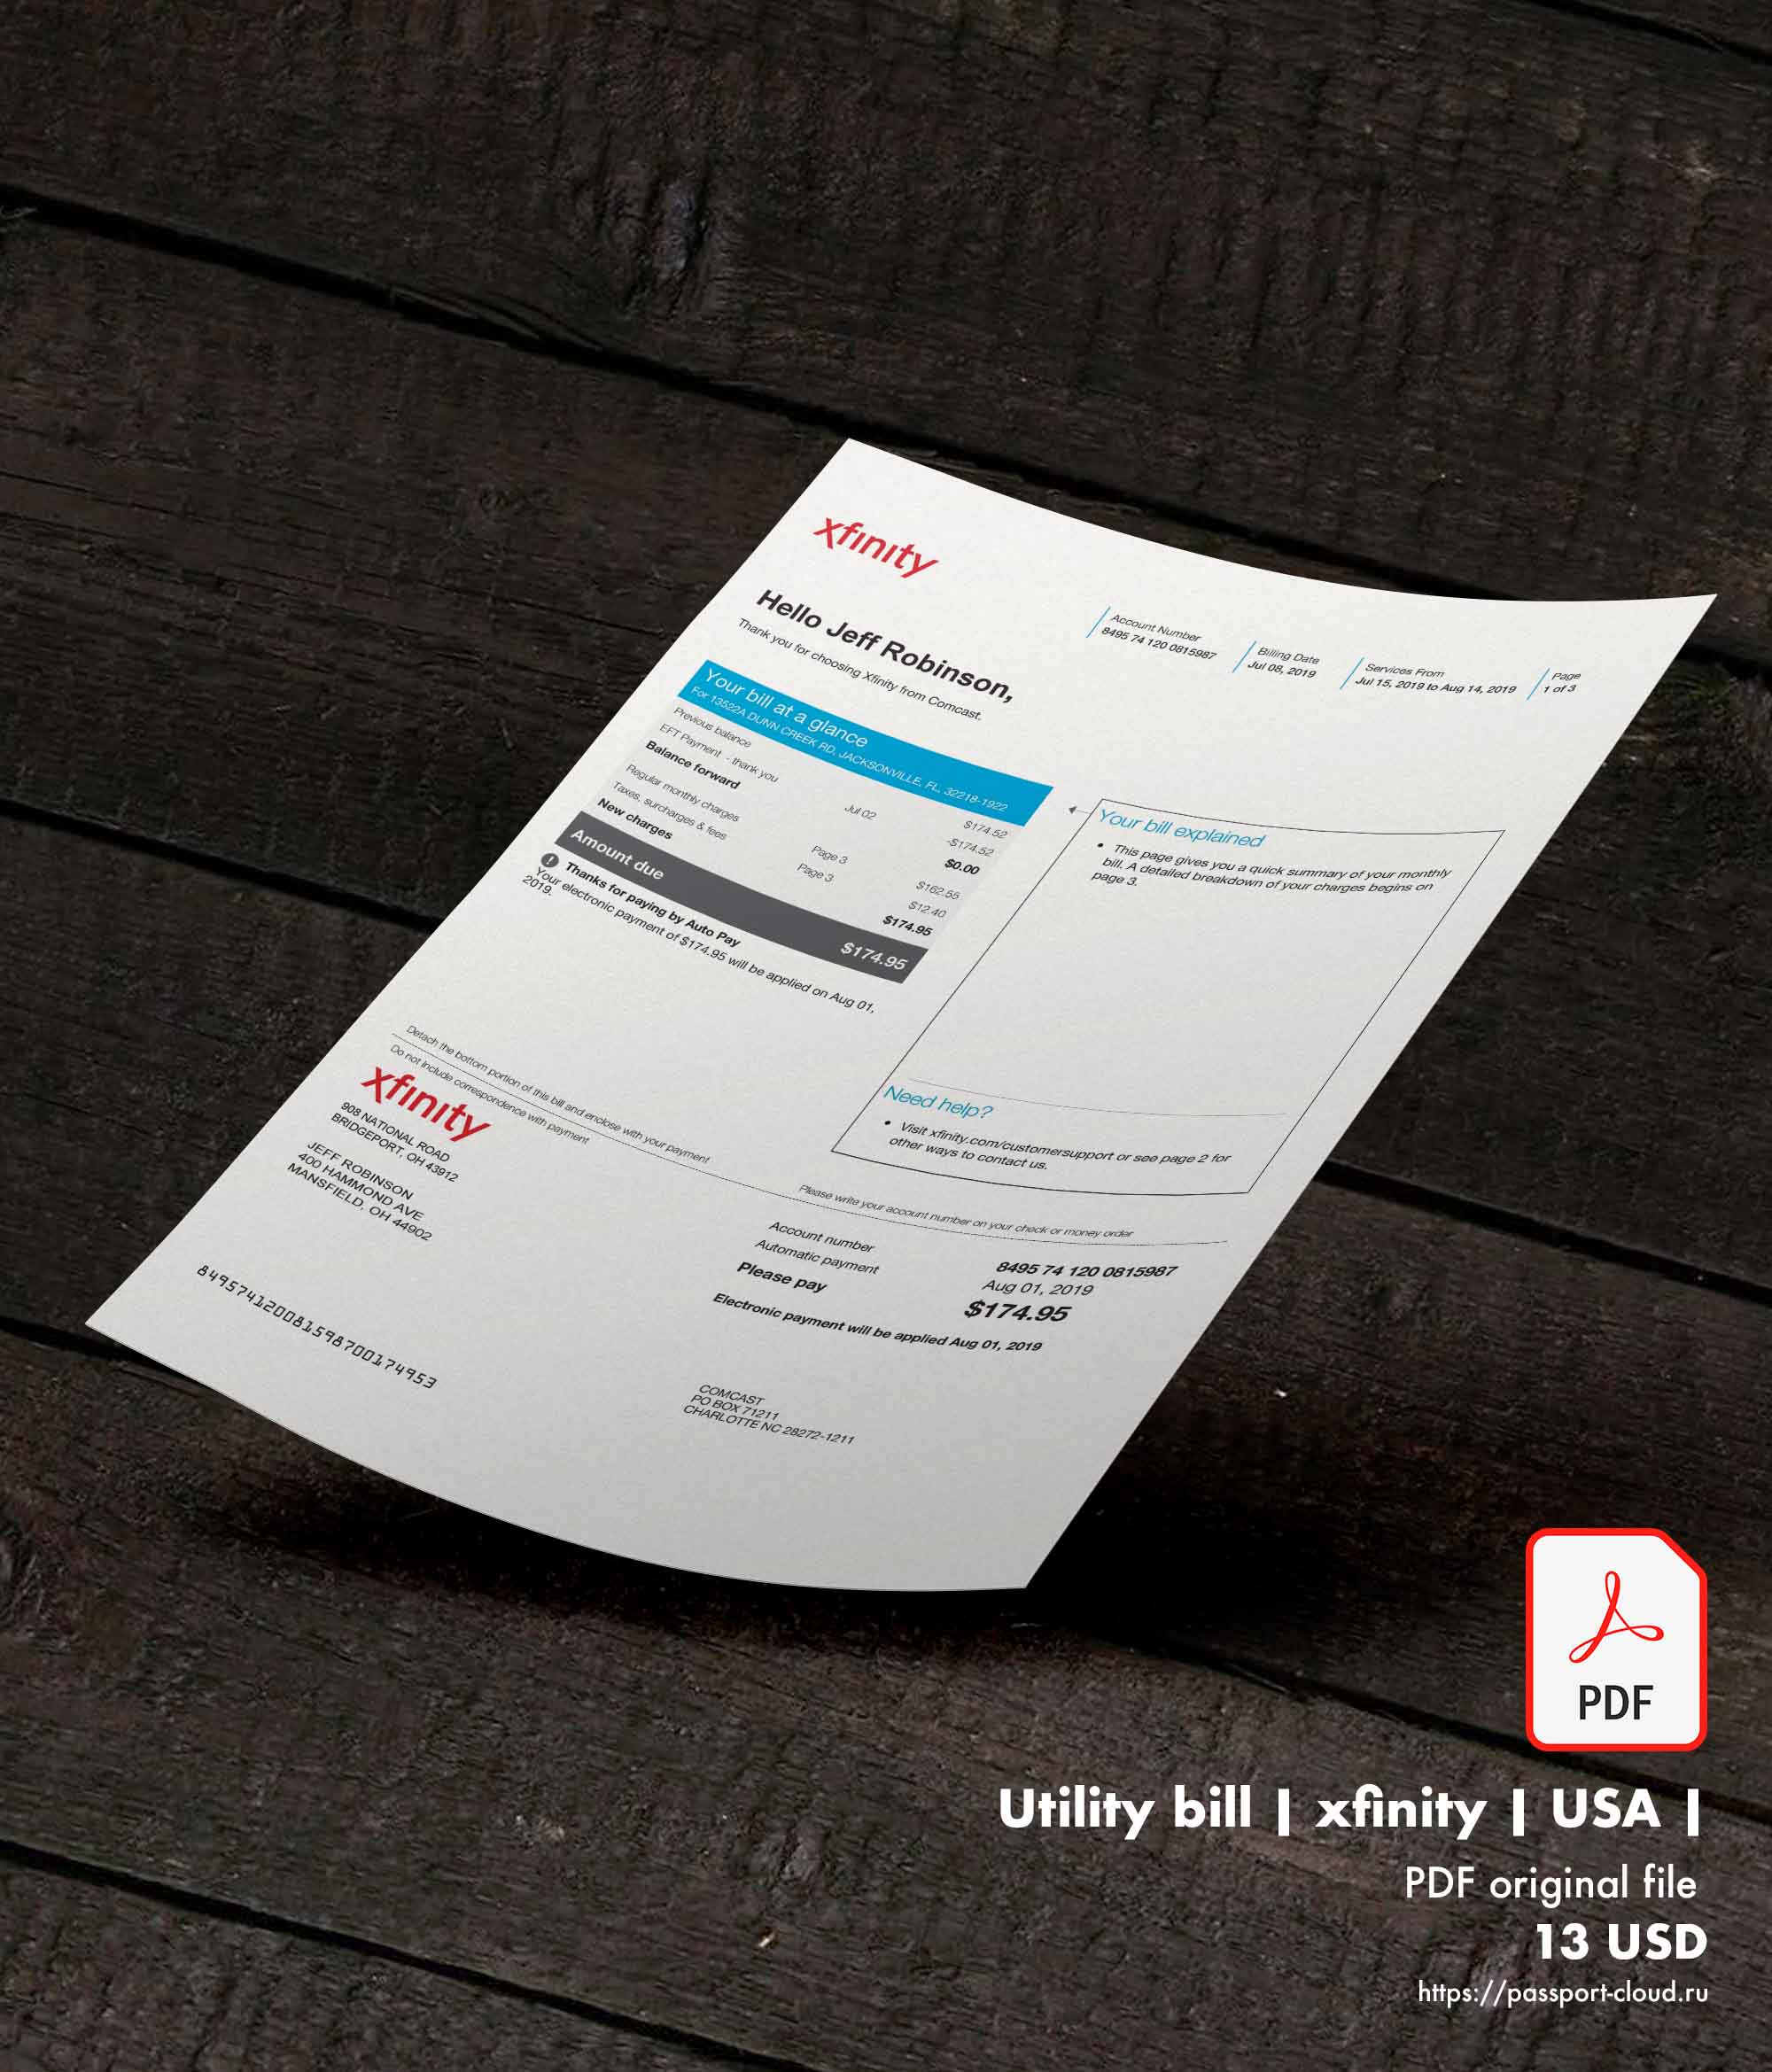 Utility bill | xfinity | USA |-0